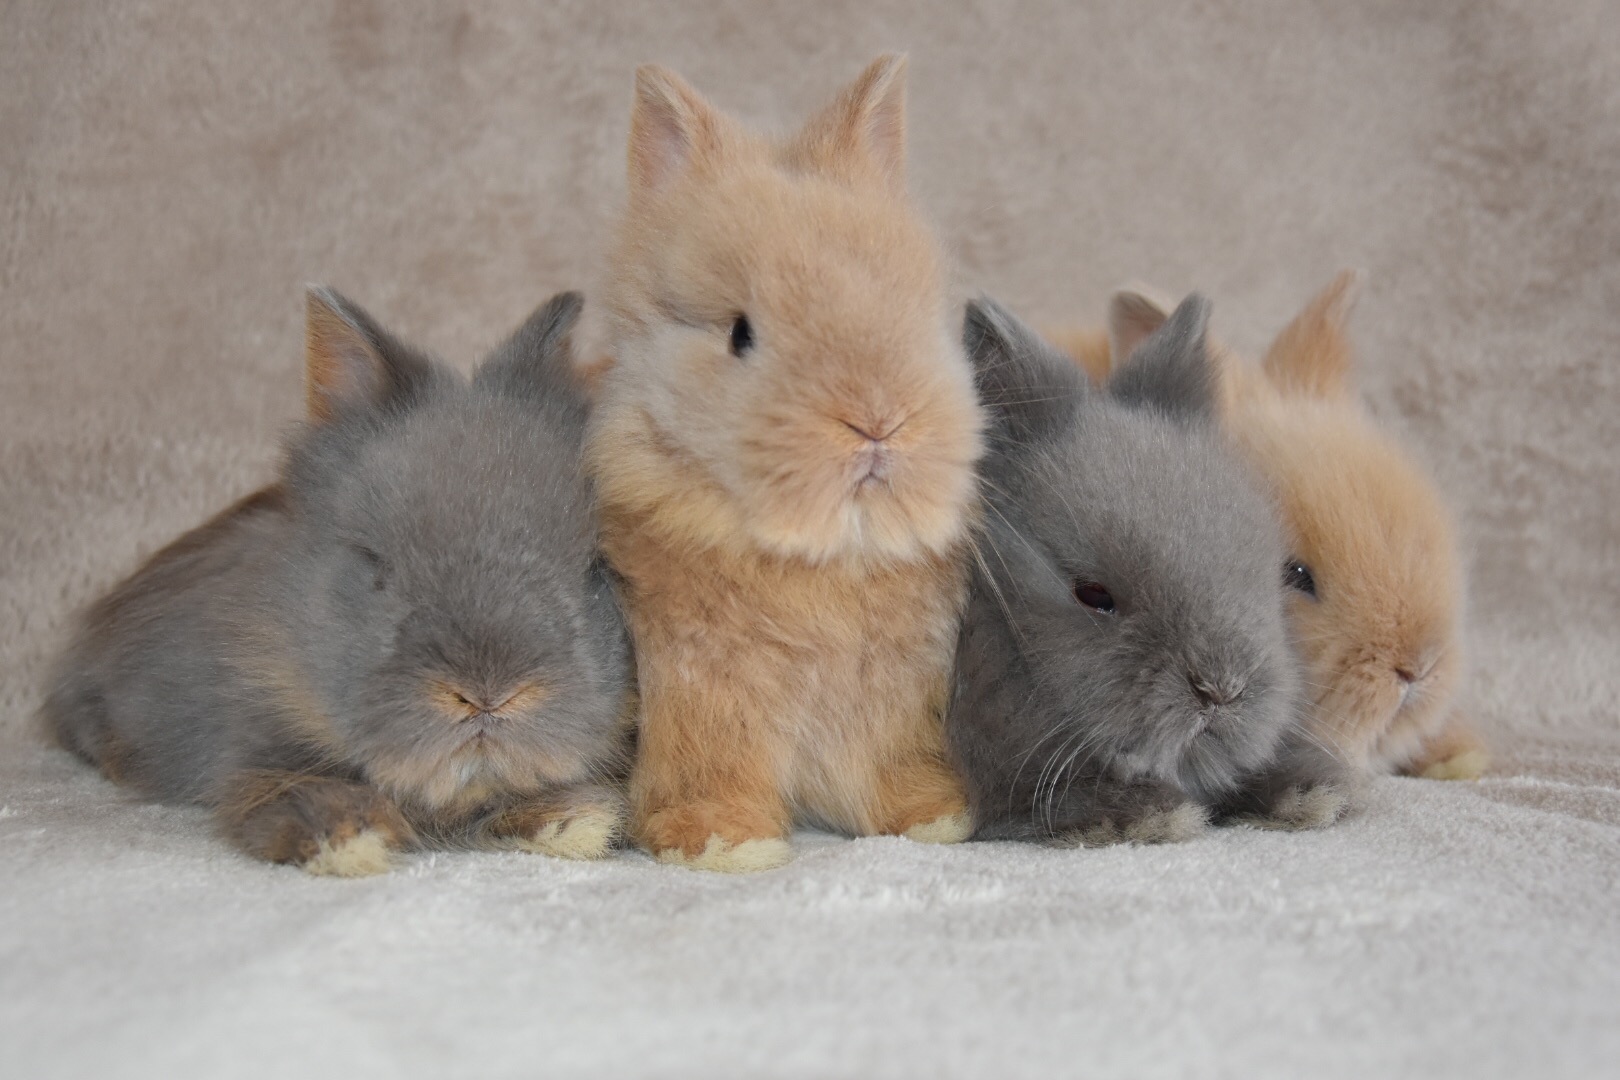 Hobby konijnen fokkerij van teddy dwerg konijnen Oudewater. Wij zijn hobbyfokkers van langharige ras teddy dwerg konijnen.Konijnenstal TeddyLove | Hobby fokker van Teddy Dwerg konijnen